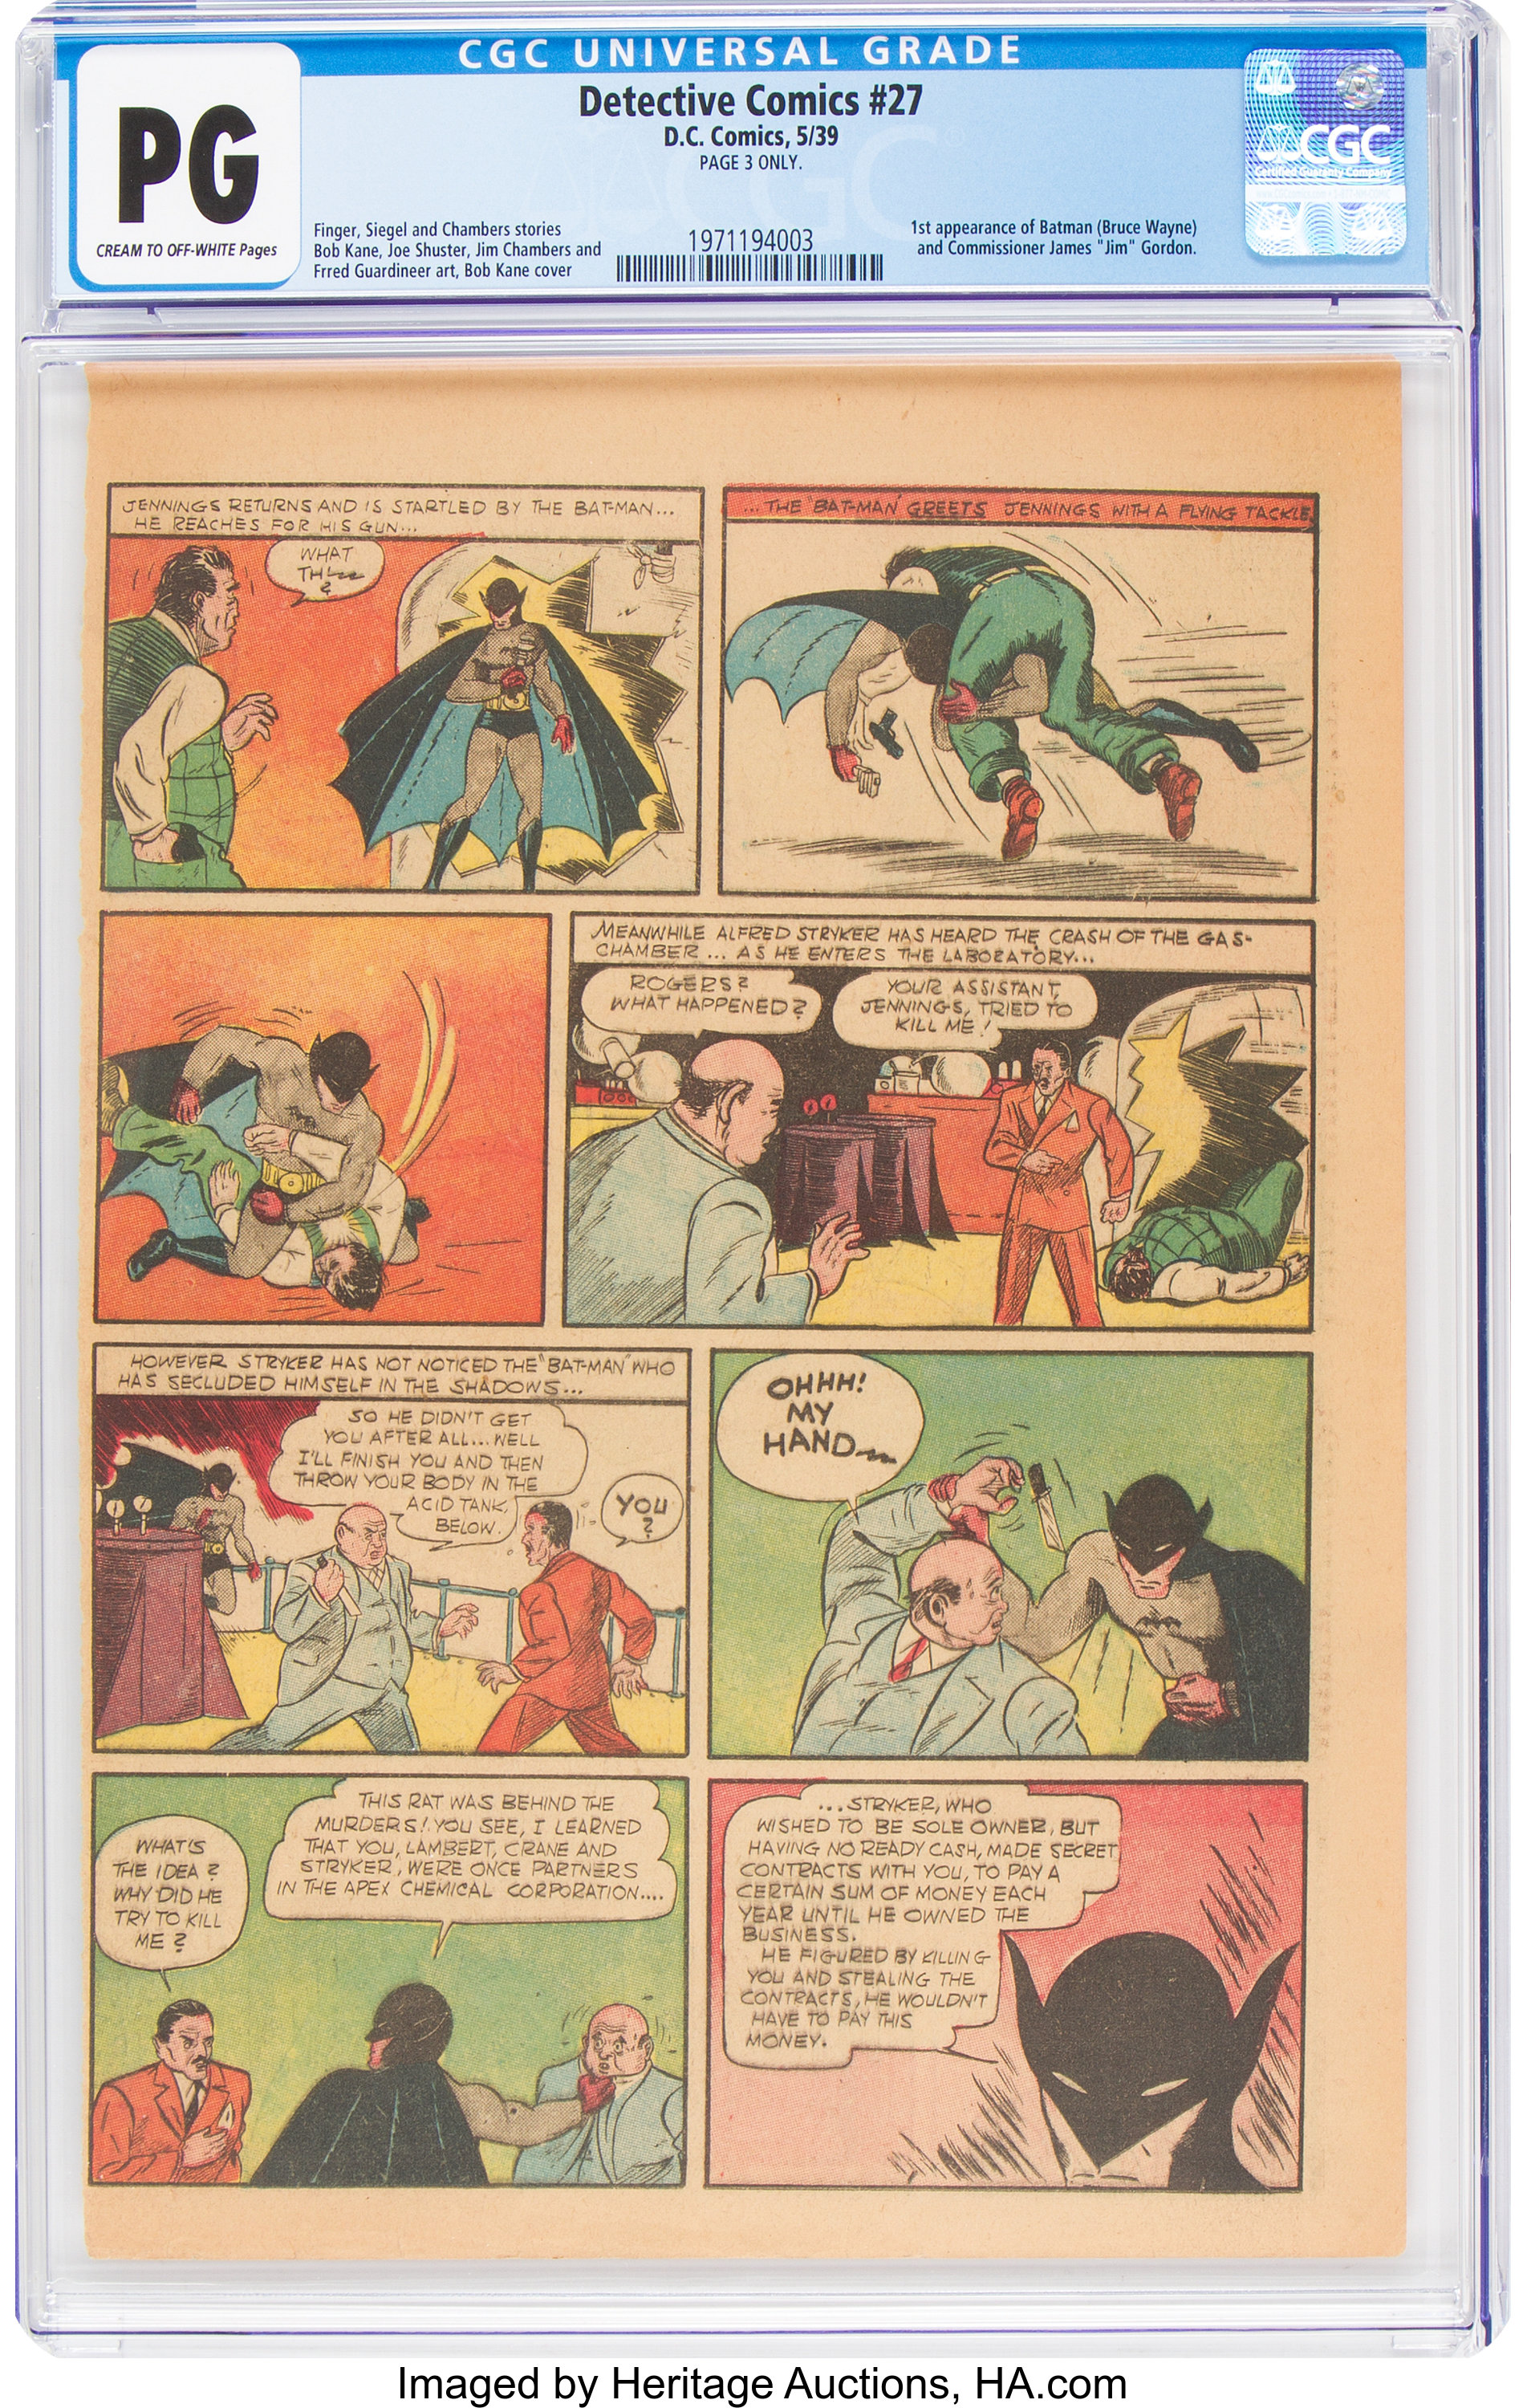 Goldin 1939 DC Detective Comics #27 Auction